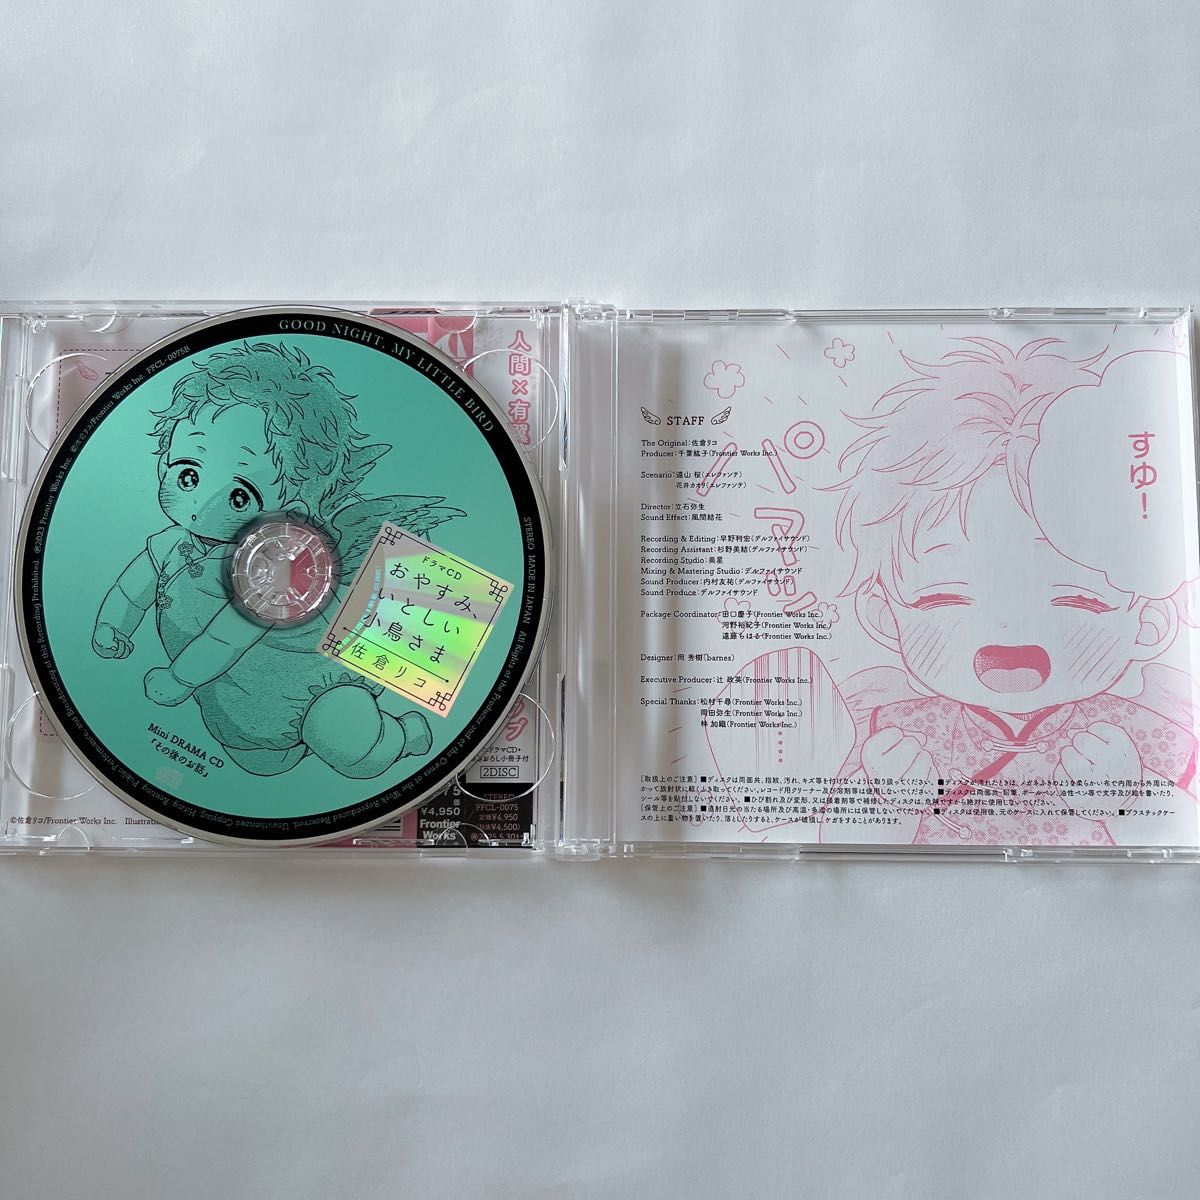 BLCD ドラマCD「おやすみ、いとしい小鳥さま」アニメイト限定セット小冊子CD付き、コミコミスタジオ特典、ダリア付録CD付き 